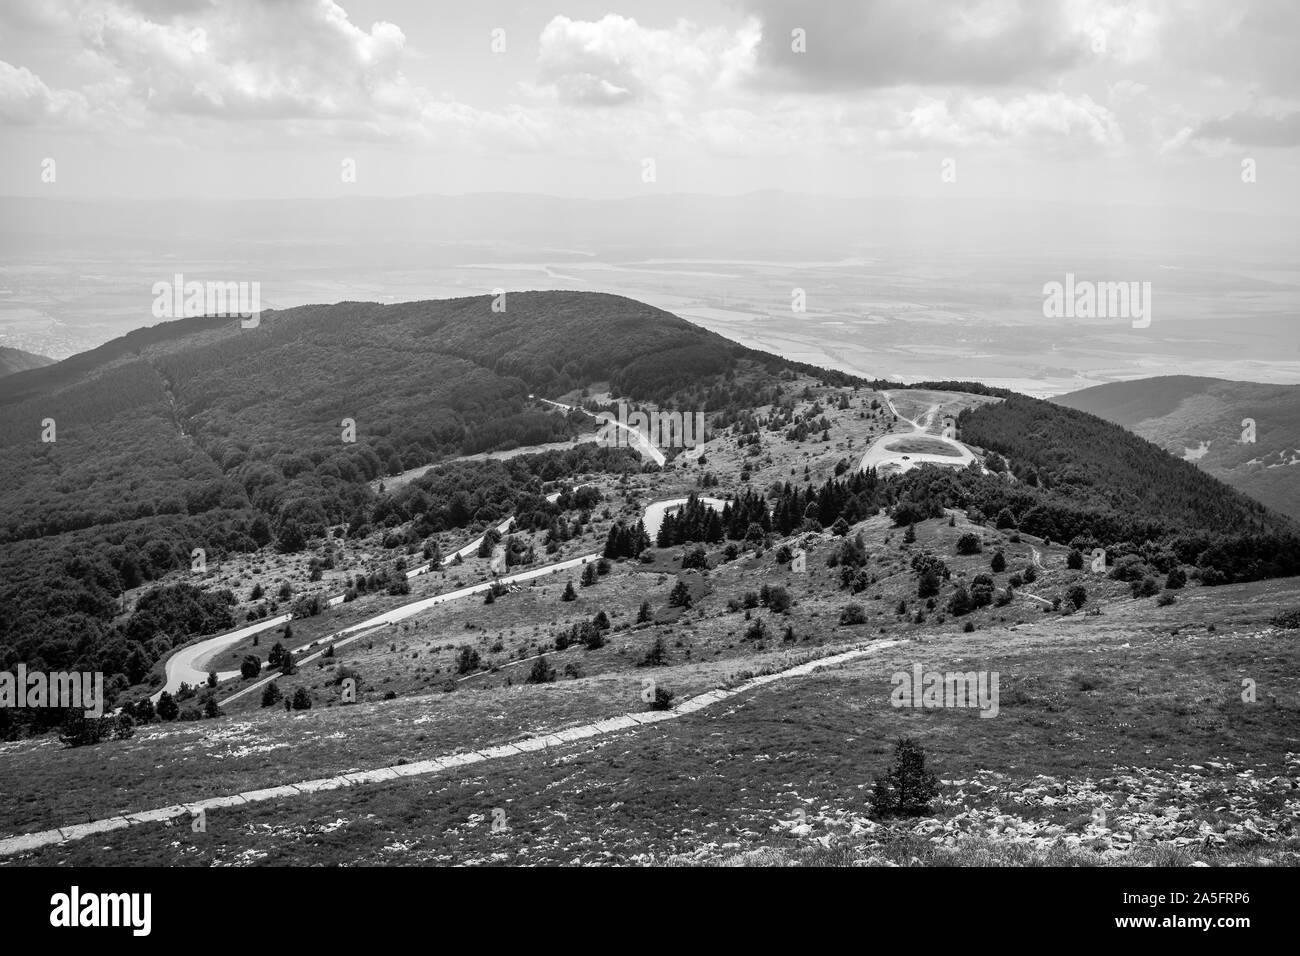 Avis de Shipka Pass de Buzludzha Peak. Shipka Pass - une vue panoramique sur la montagne passer à travers les montagnes des Balkans en Bulgarie. Noir et blanc. Banque D'Images